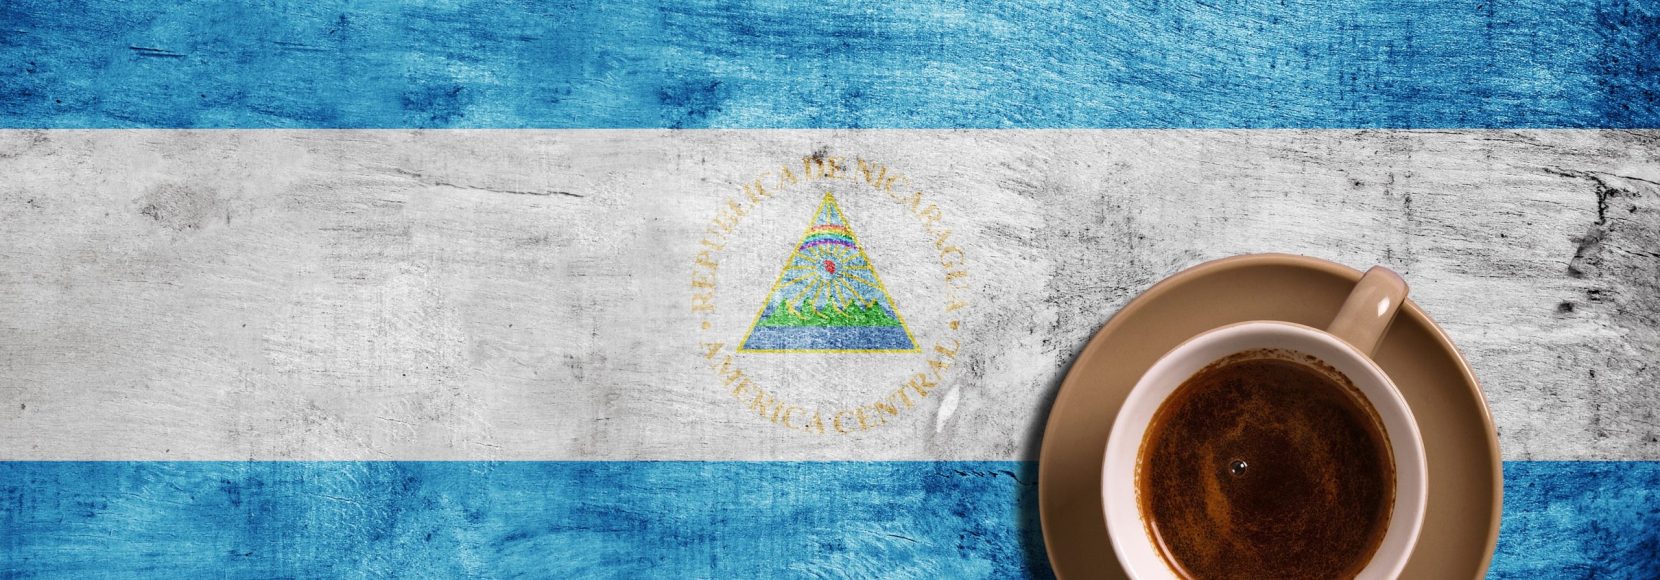 coffee-and-nicaragua-flag